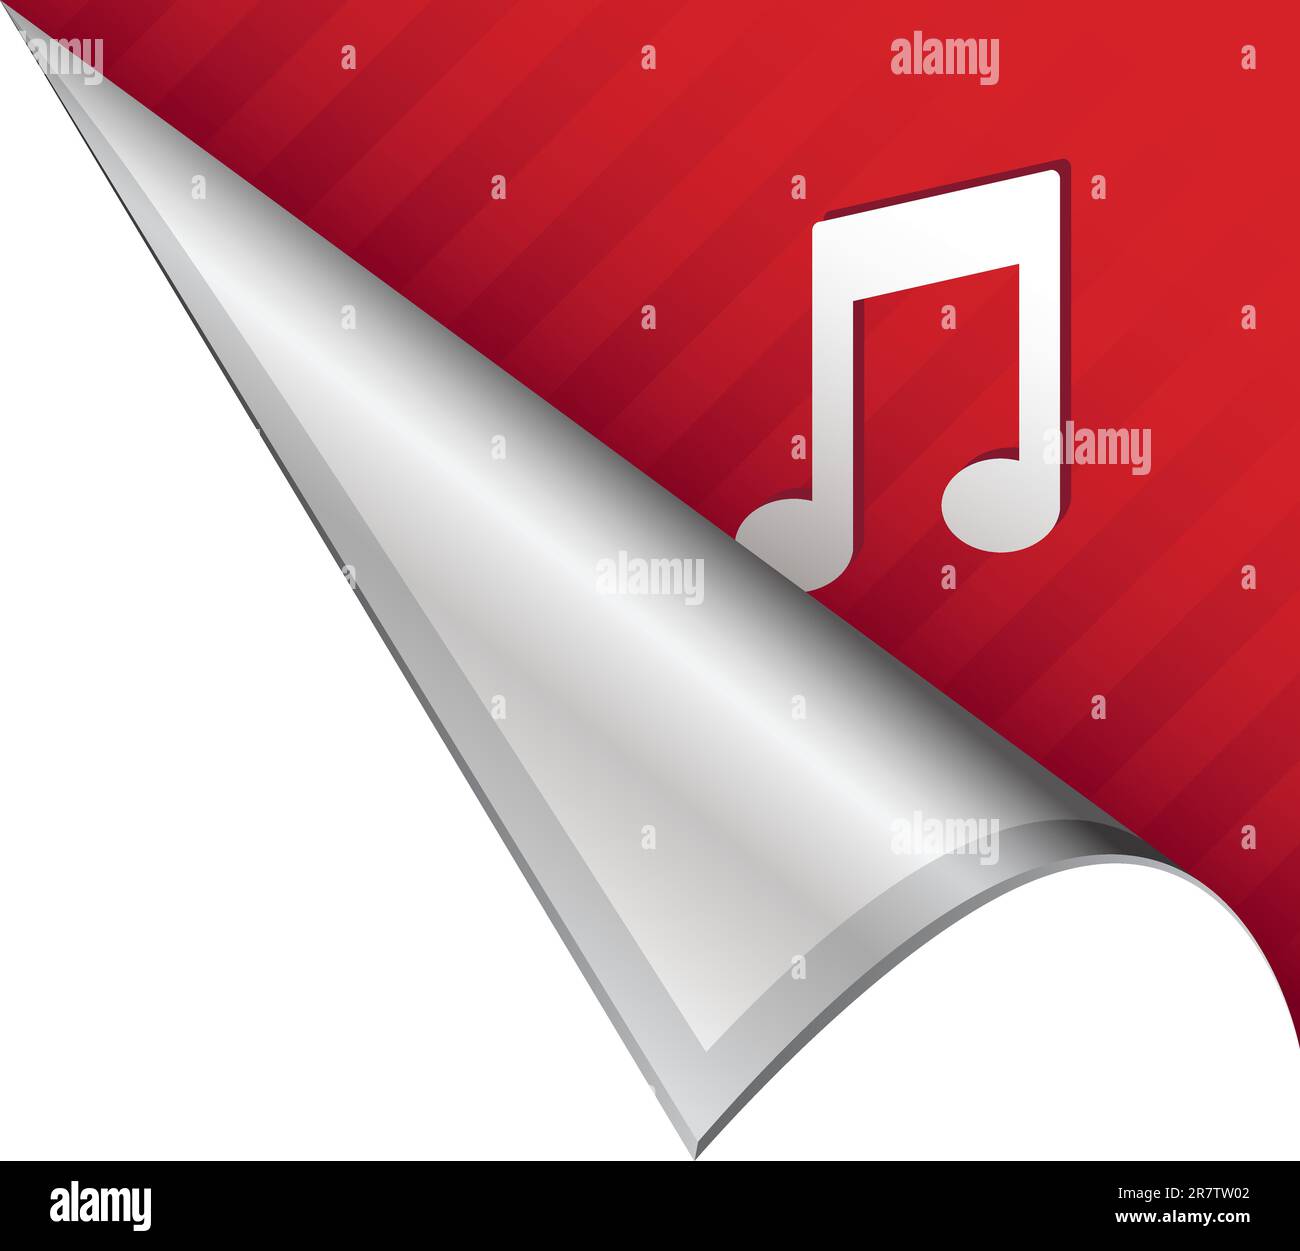 Icona delle note musicali su una linguetta ad angolo con apertura vettoriale adatta per l'uso nella stampa, sui siti Web o nei materiali pubblicitari. Illustrazione Vettoriale